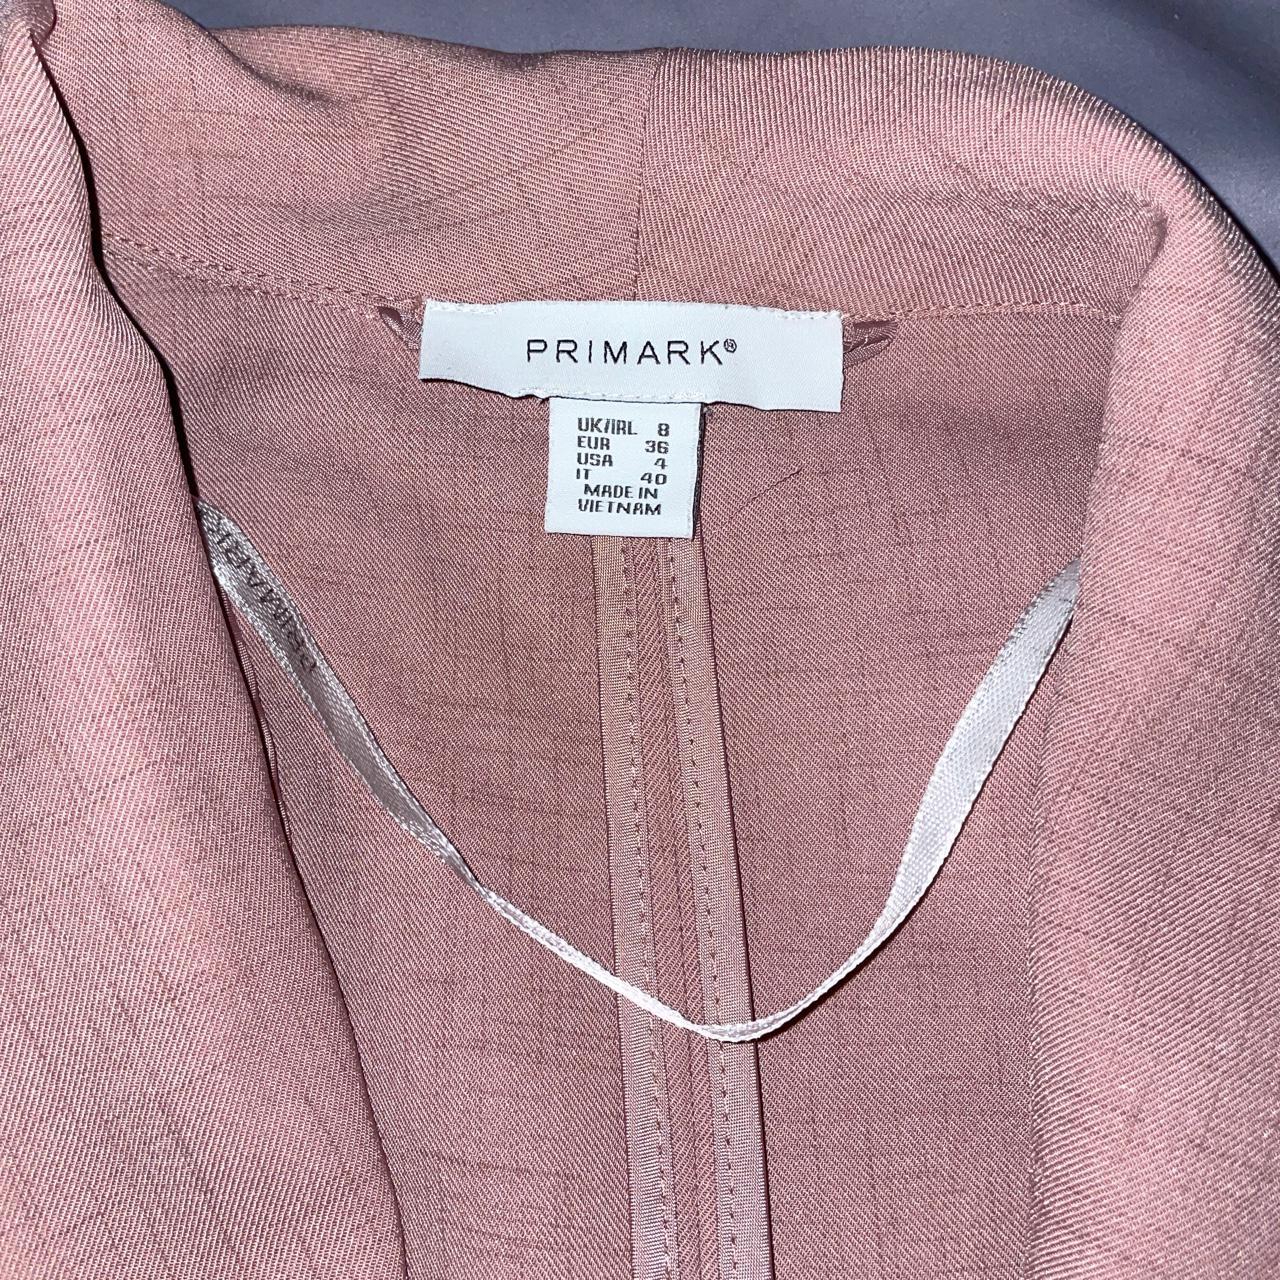 Primark Women's Pink Jacket | Depop